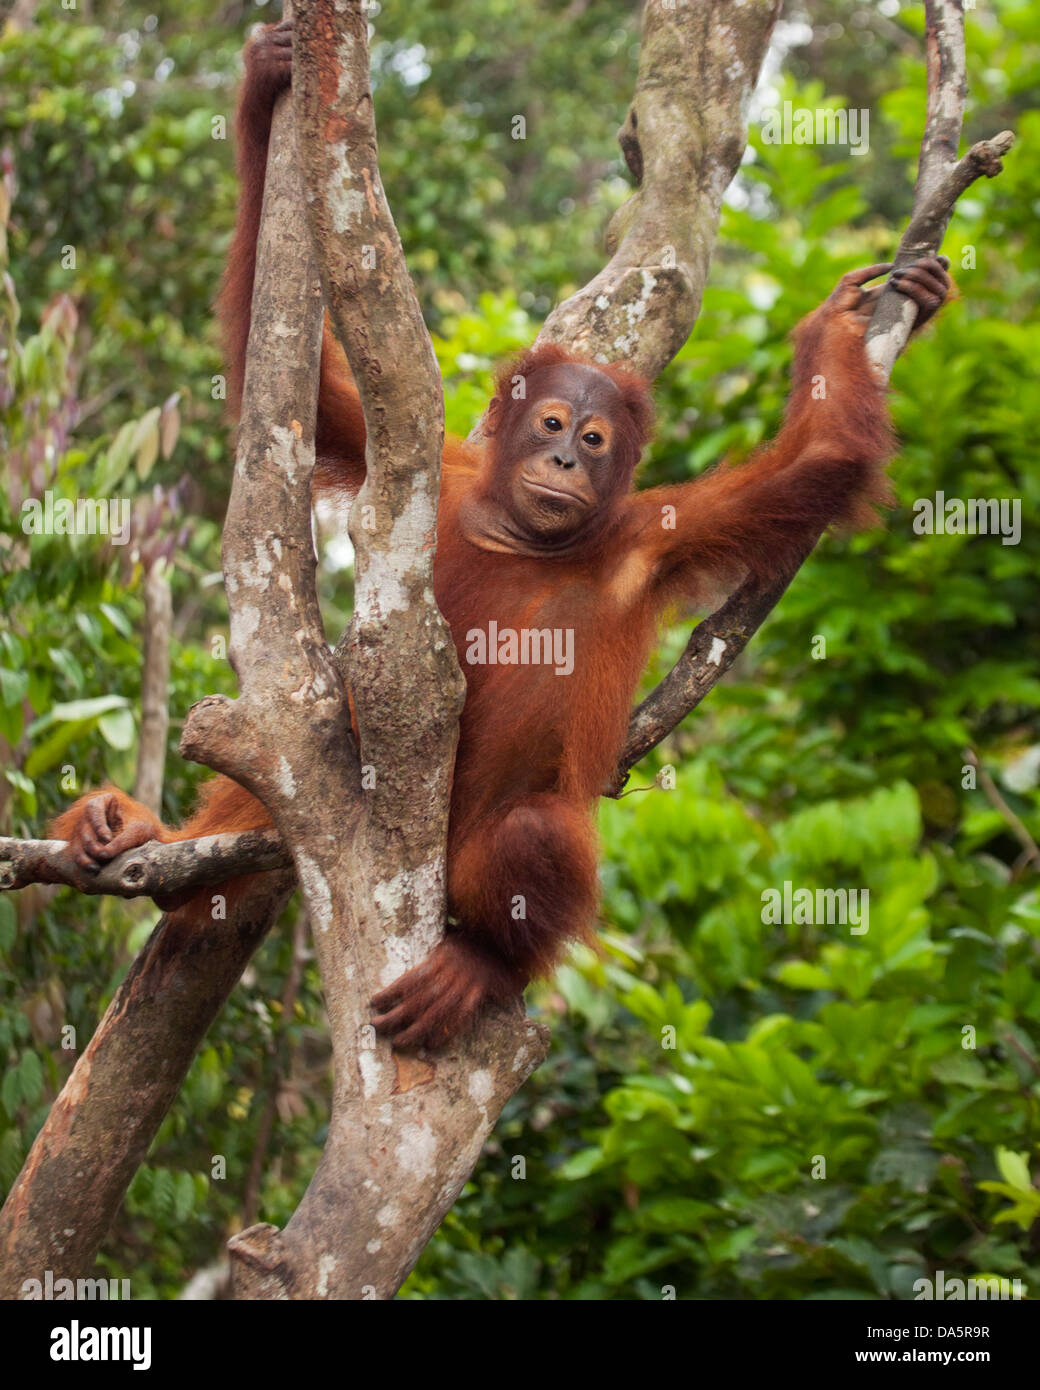 Orangután borneano salvaje (Pongo pygmaeus) sentado en el árbol en la selva tropical borneana. Especies en peligro crítico Foto de stock